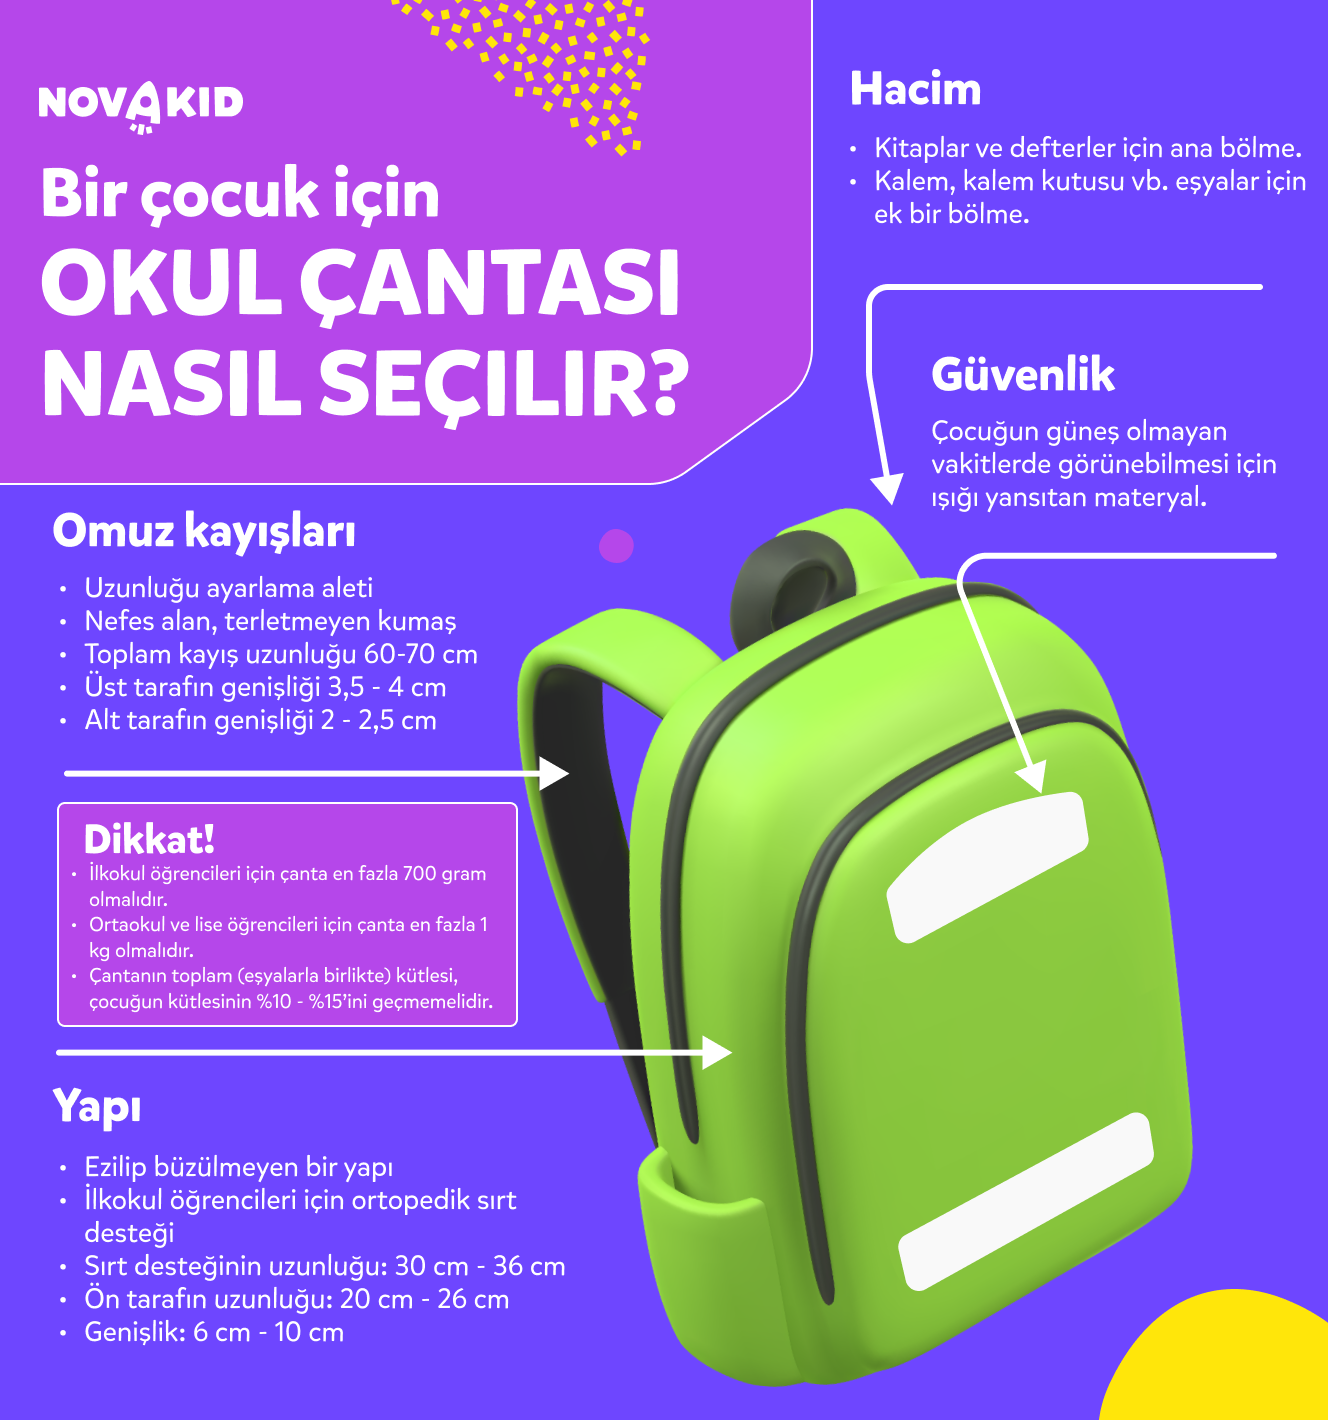 Yeşil okul çantası görseli, bir çocuk için okul çantası nasıl seçilir infografikler